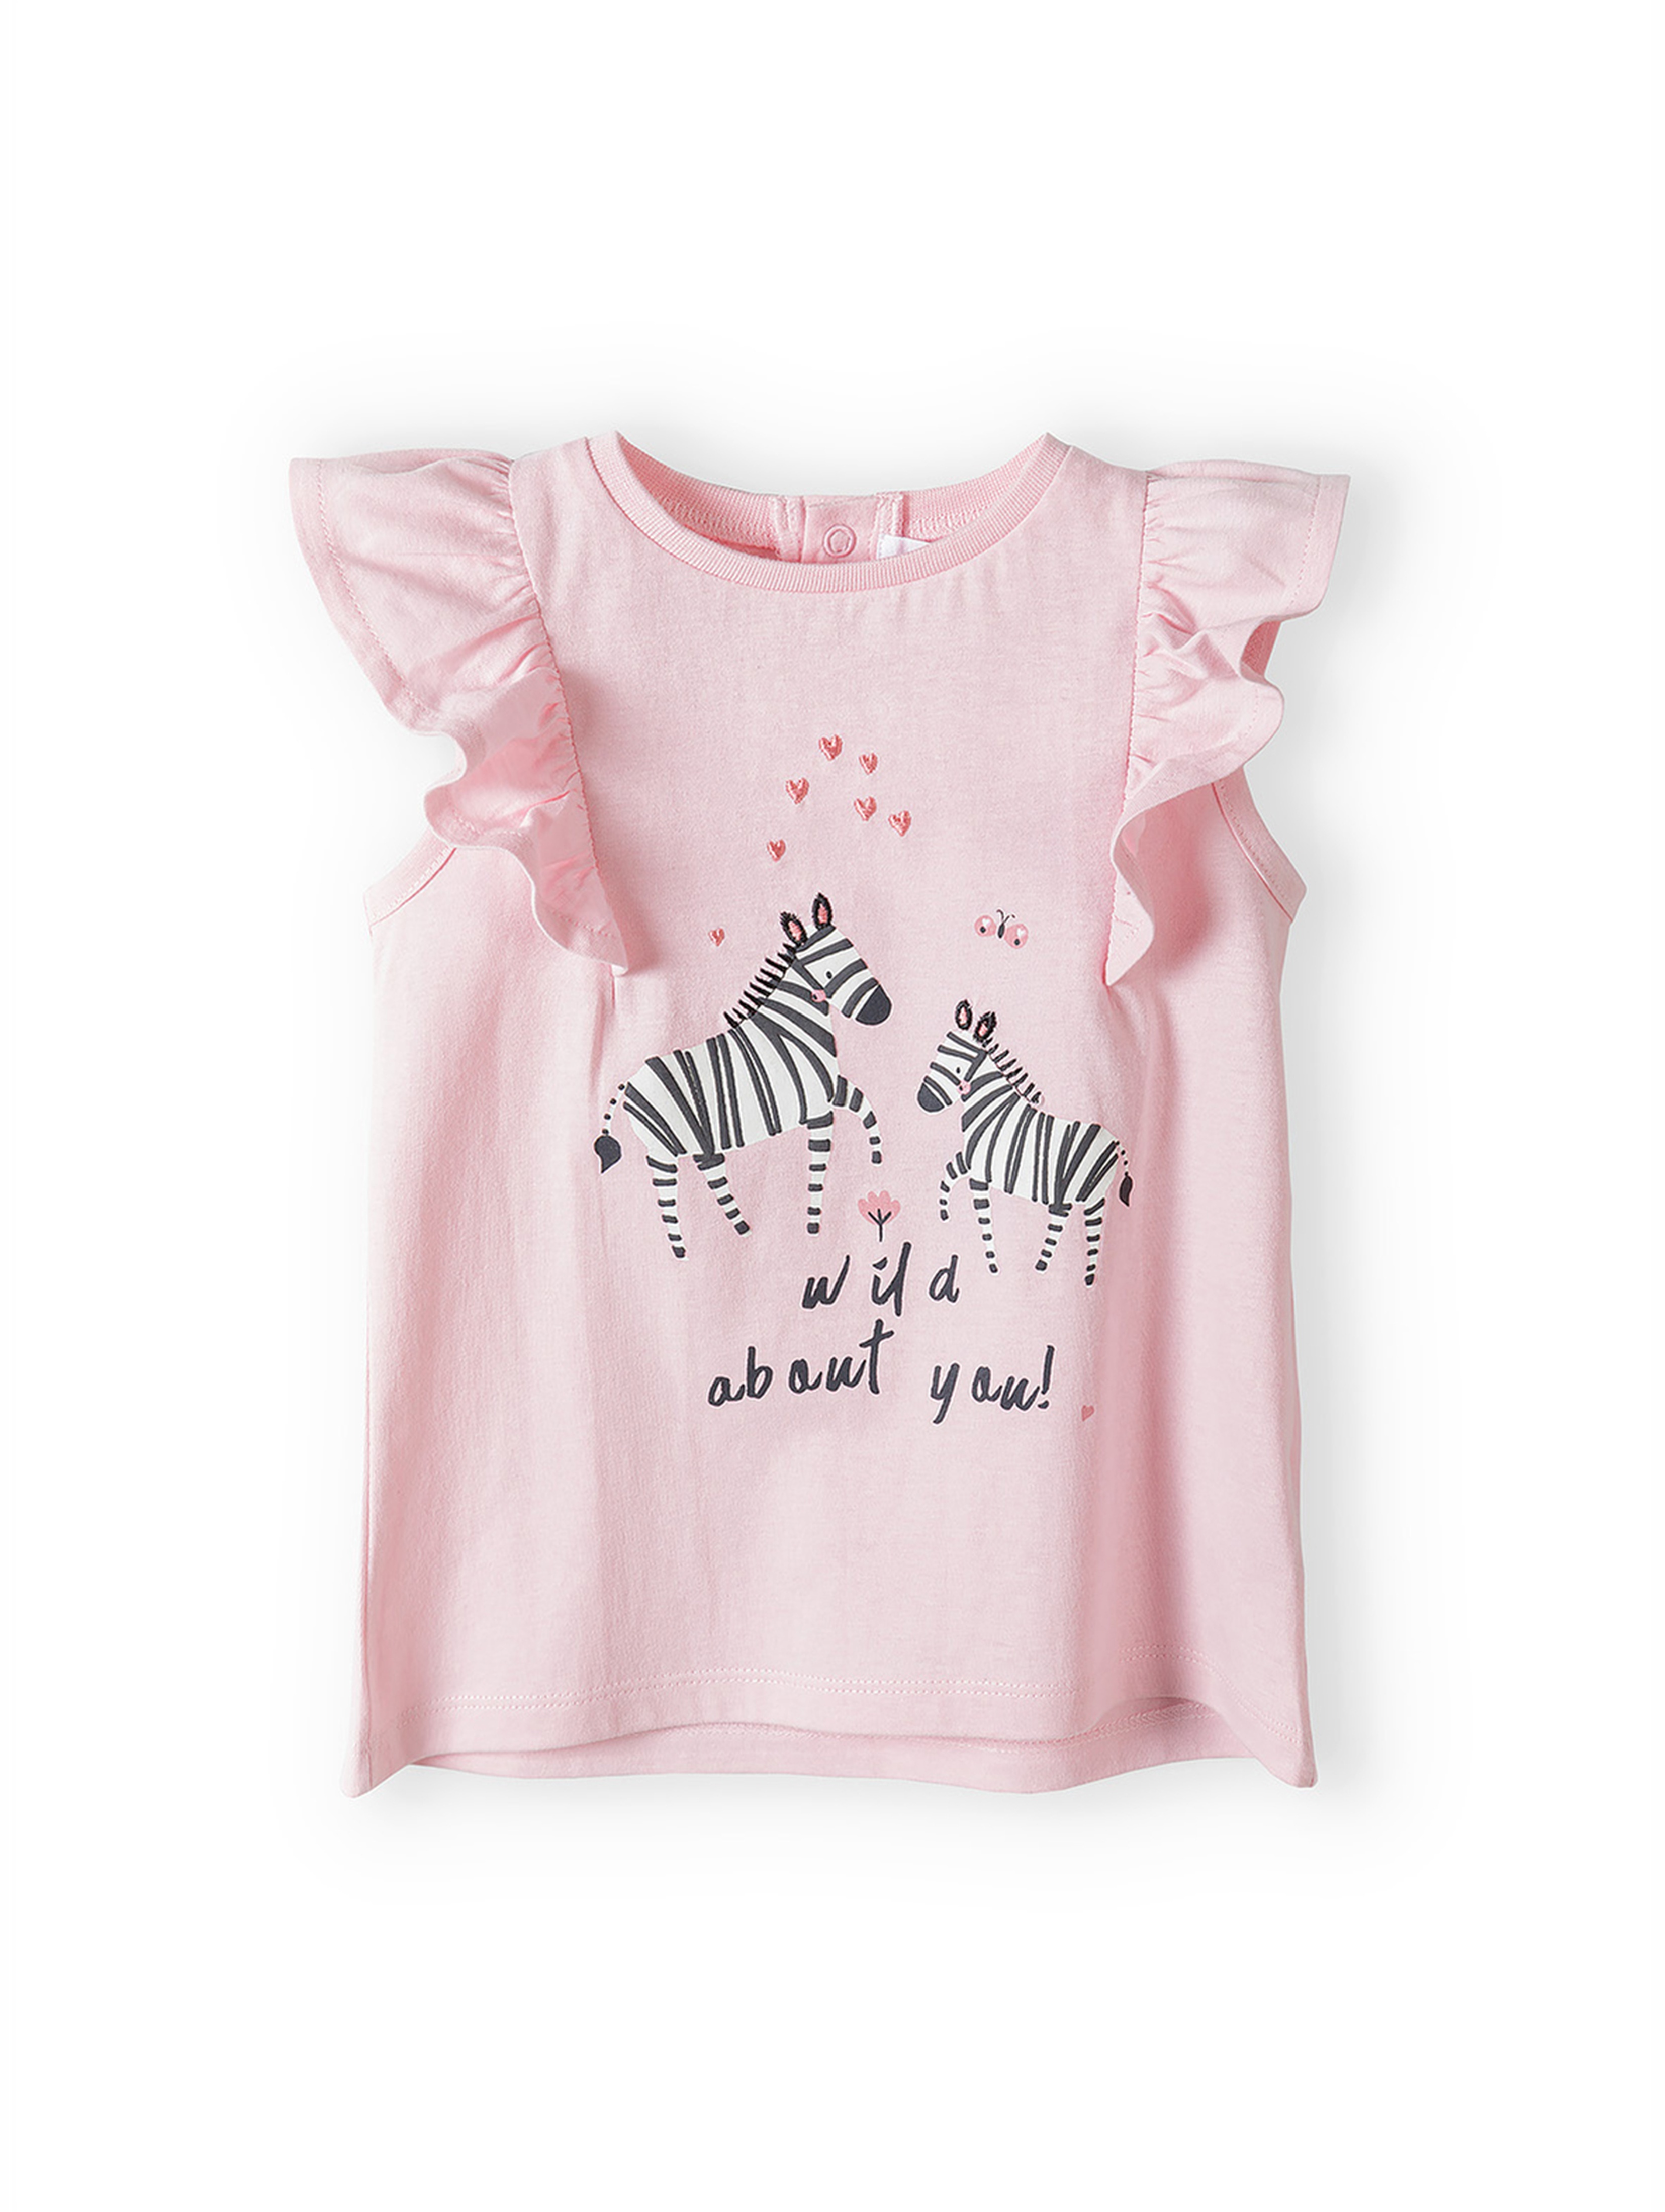 Komplet dla niemowlaka- różowy t-shirt + białe legginsy w grochy